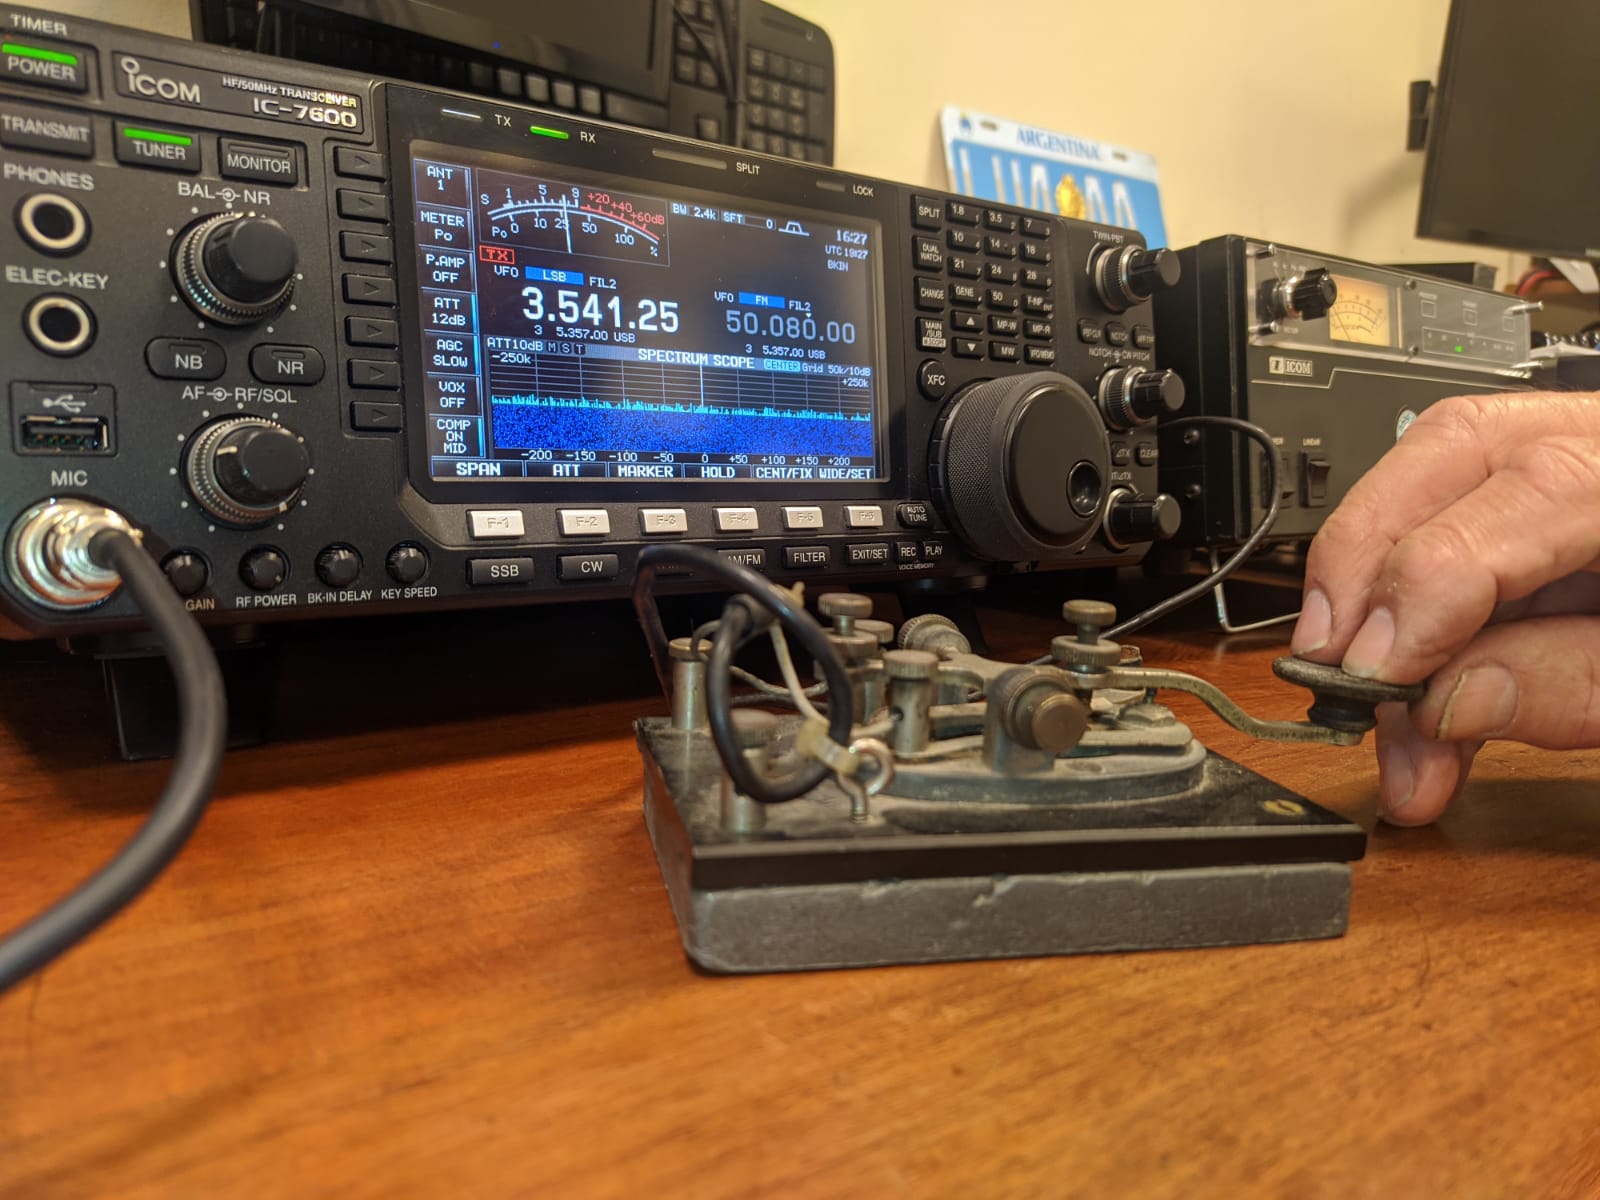 Un manipulador para transmisiones de Telegrafía, conectado a un equipo nuevo con capacidad de conservar los modos más primarios